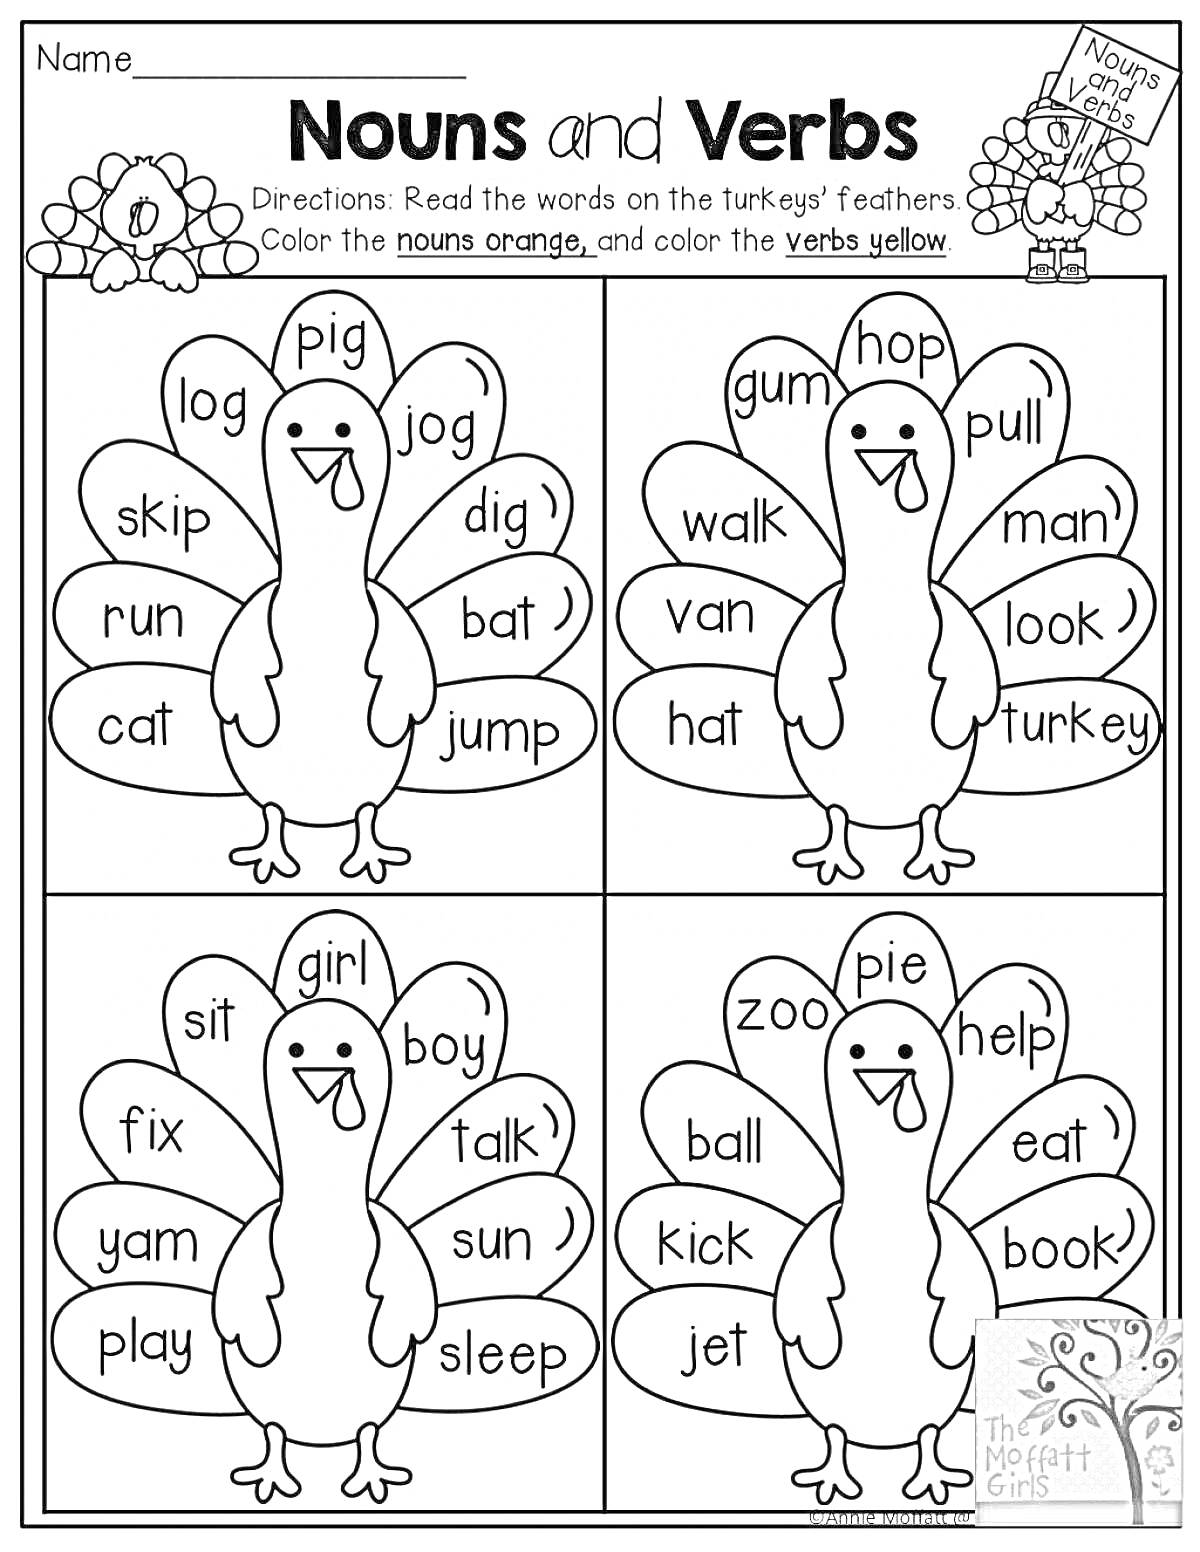 Раскраска Лист для раскраски с изображением четырех индюков и словами на перьях. Слова включают существительные и глаголы.